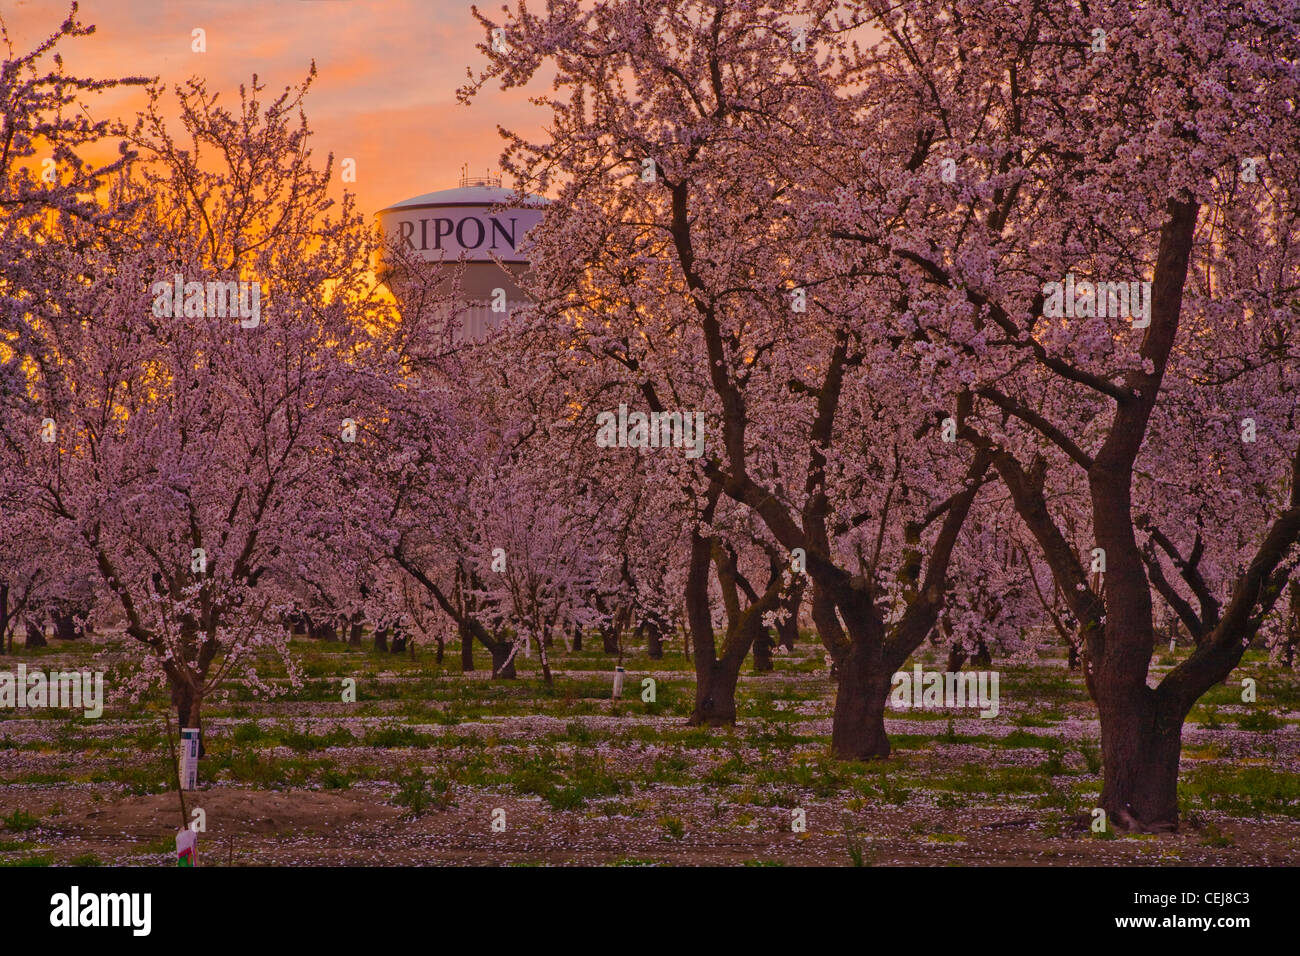 Landwirtschaft - Peach Orchard in voller Frühling blühen bei Sonnenaufgang mit einem Wasserturm im Hintergrund / Ripon, Kalifornien, USA. Stockfoto